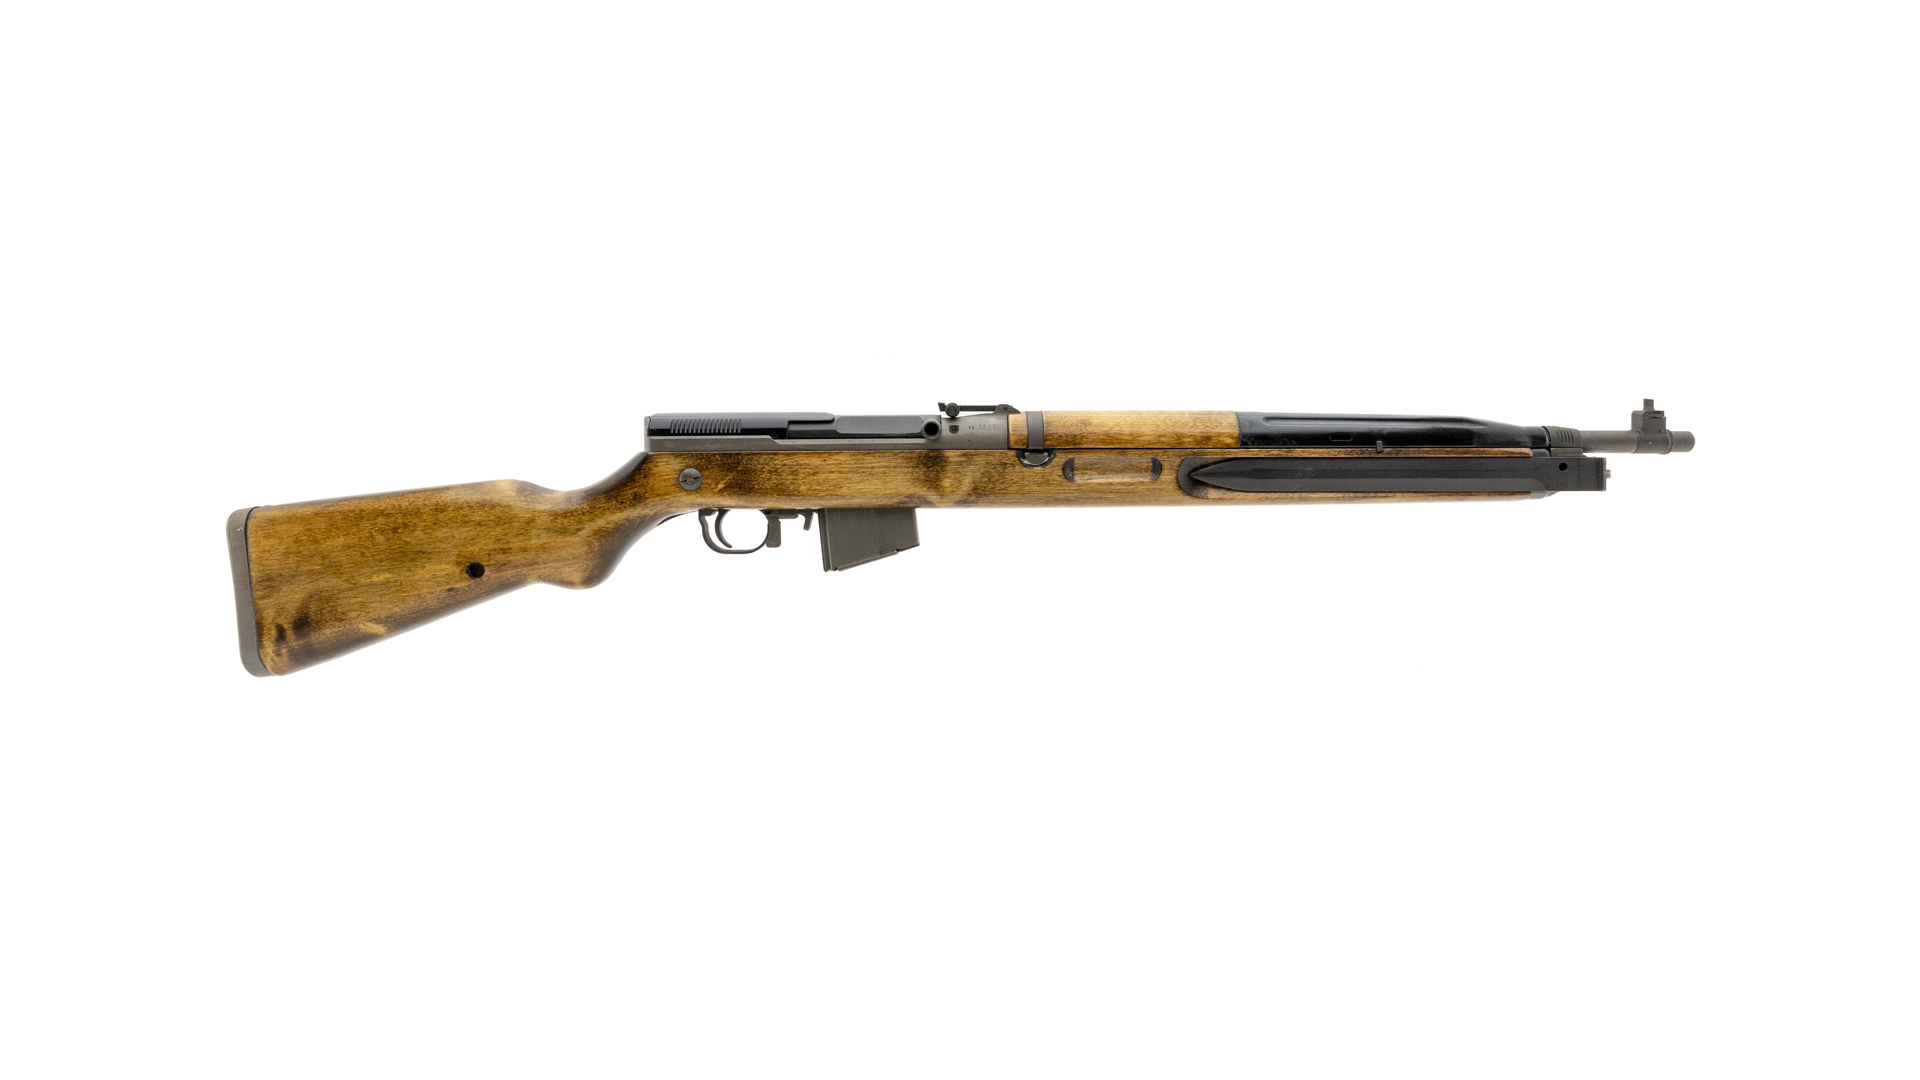 Classic Guns: Pattern 1853 Enfield Rifle-Musket